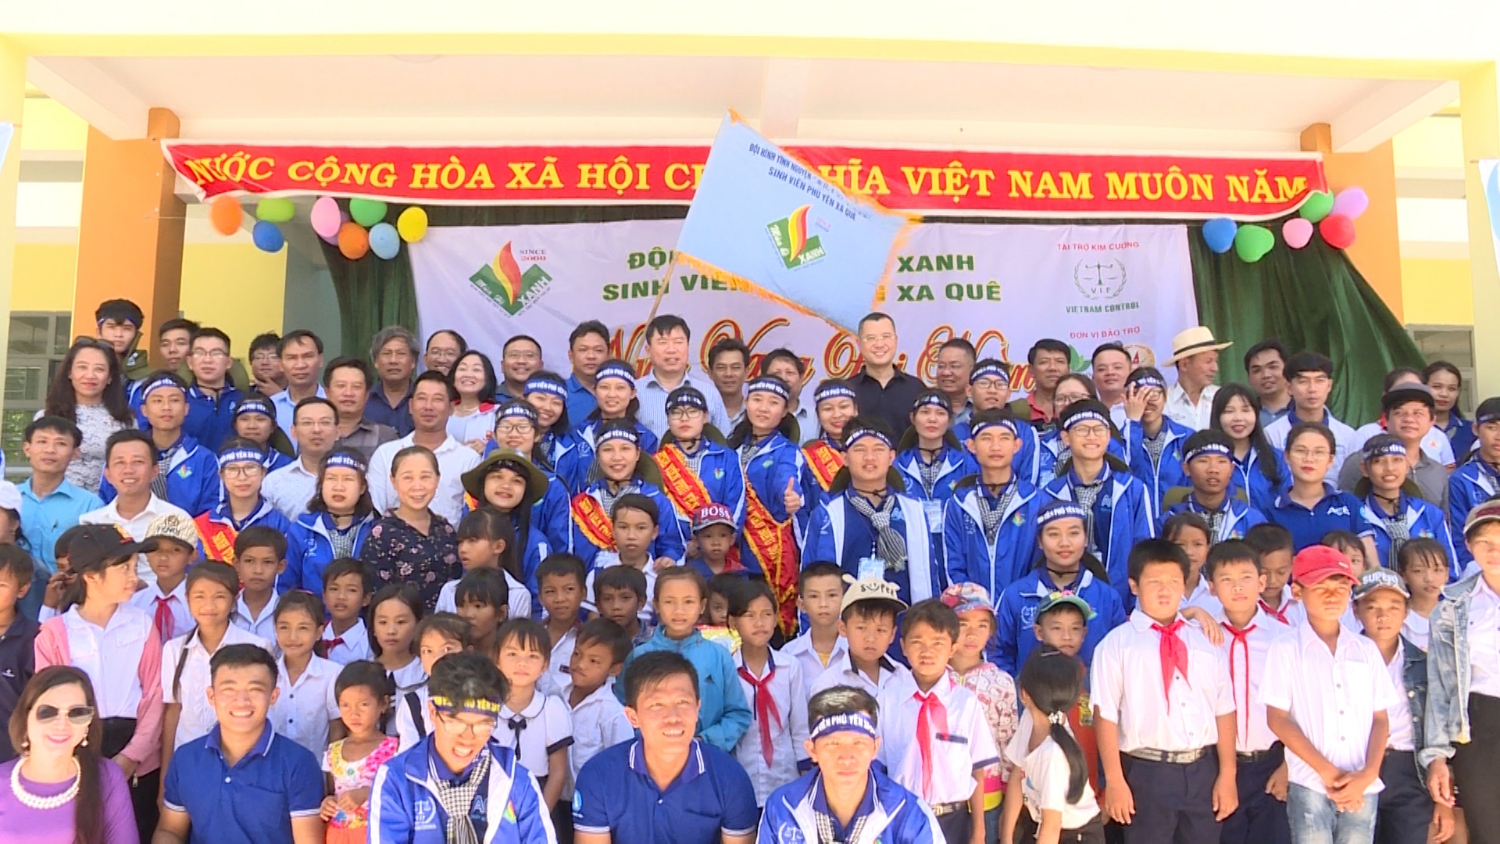 Các đồng chí lãnh đạo tỉnh chụp hình lưu niệm với đội hình Mùa hè xanh sinh viên Phú Yên xa quê.